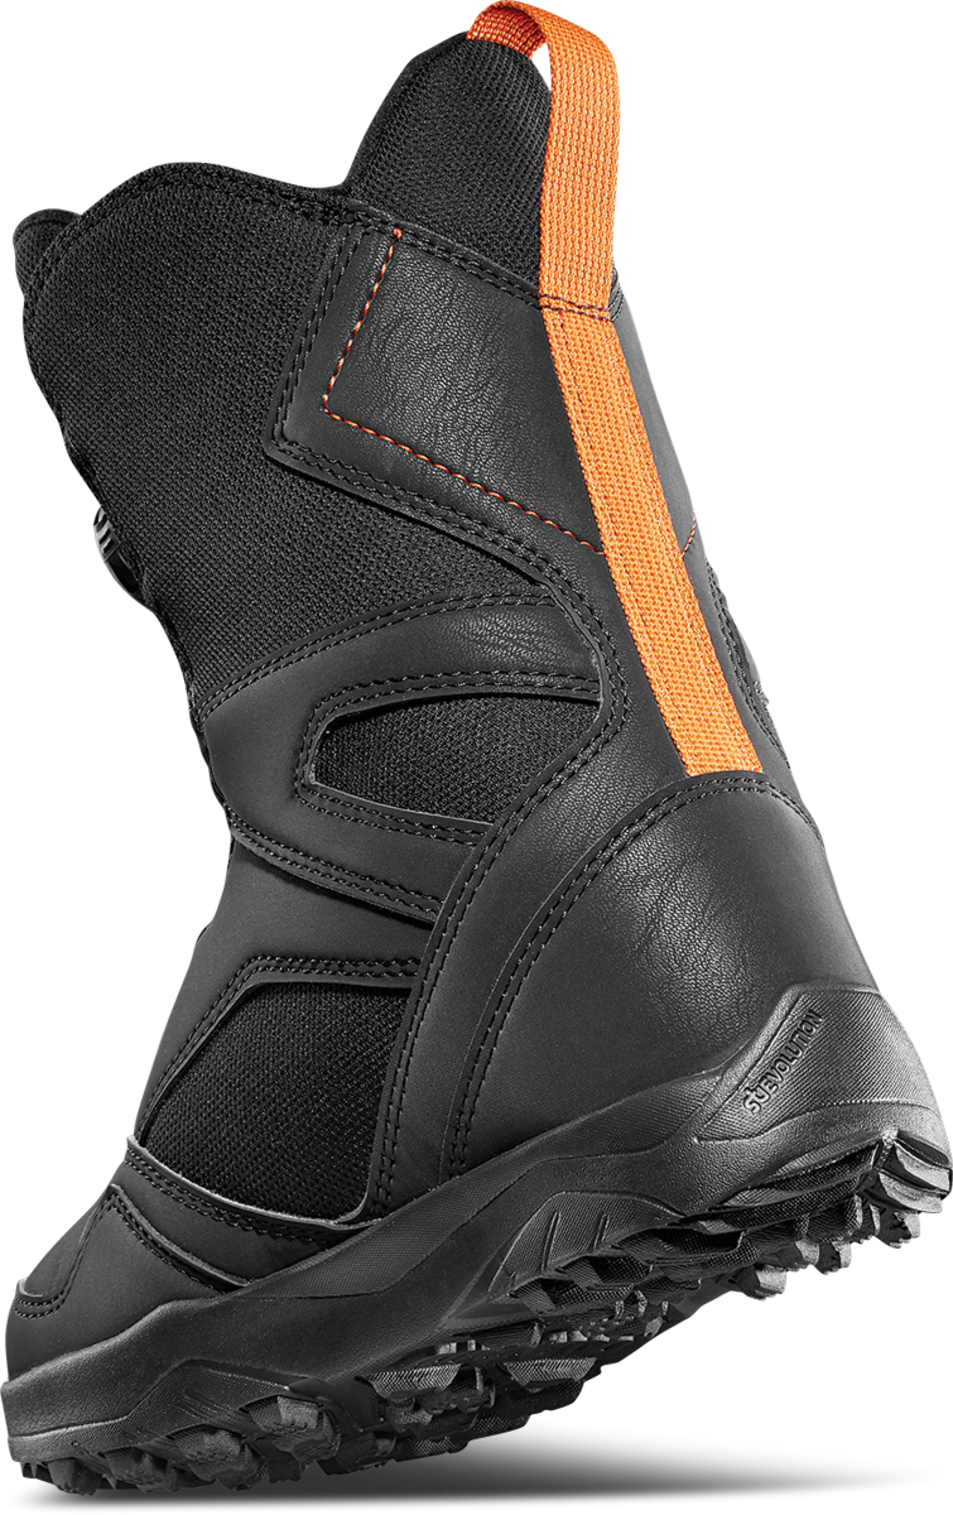 Thirtytwo Kids Boa '21 Black Orange Snow Boots